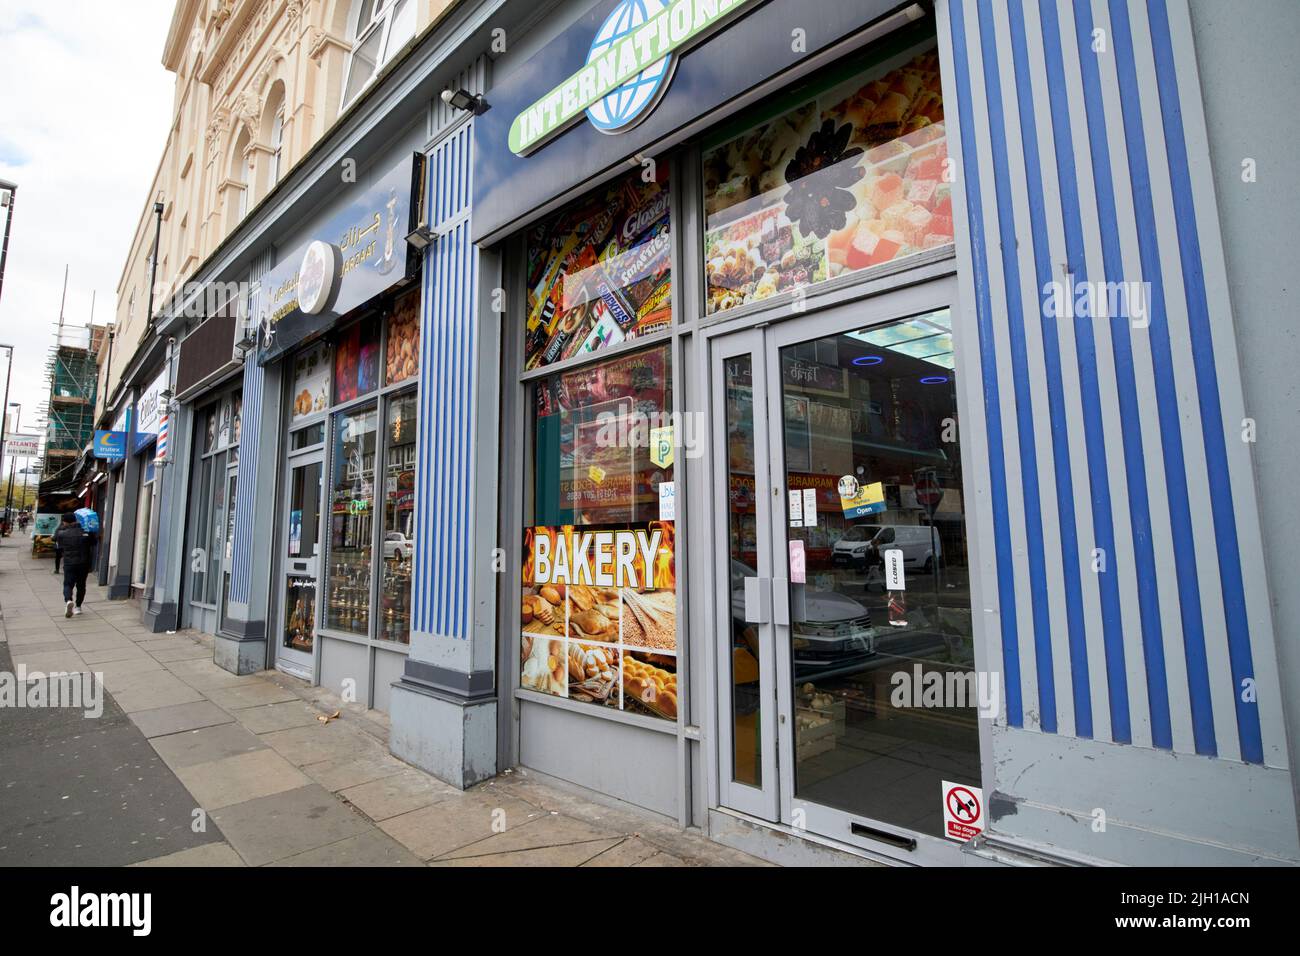 Tiendas y tiendas de comida para inmigrantes London road Liverpool England UK Foto de stock